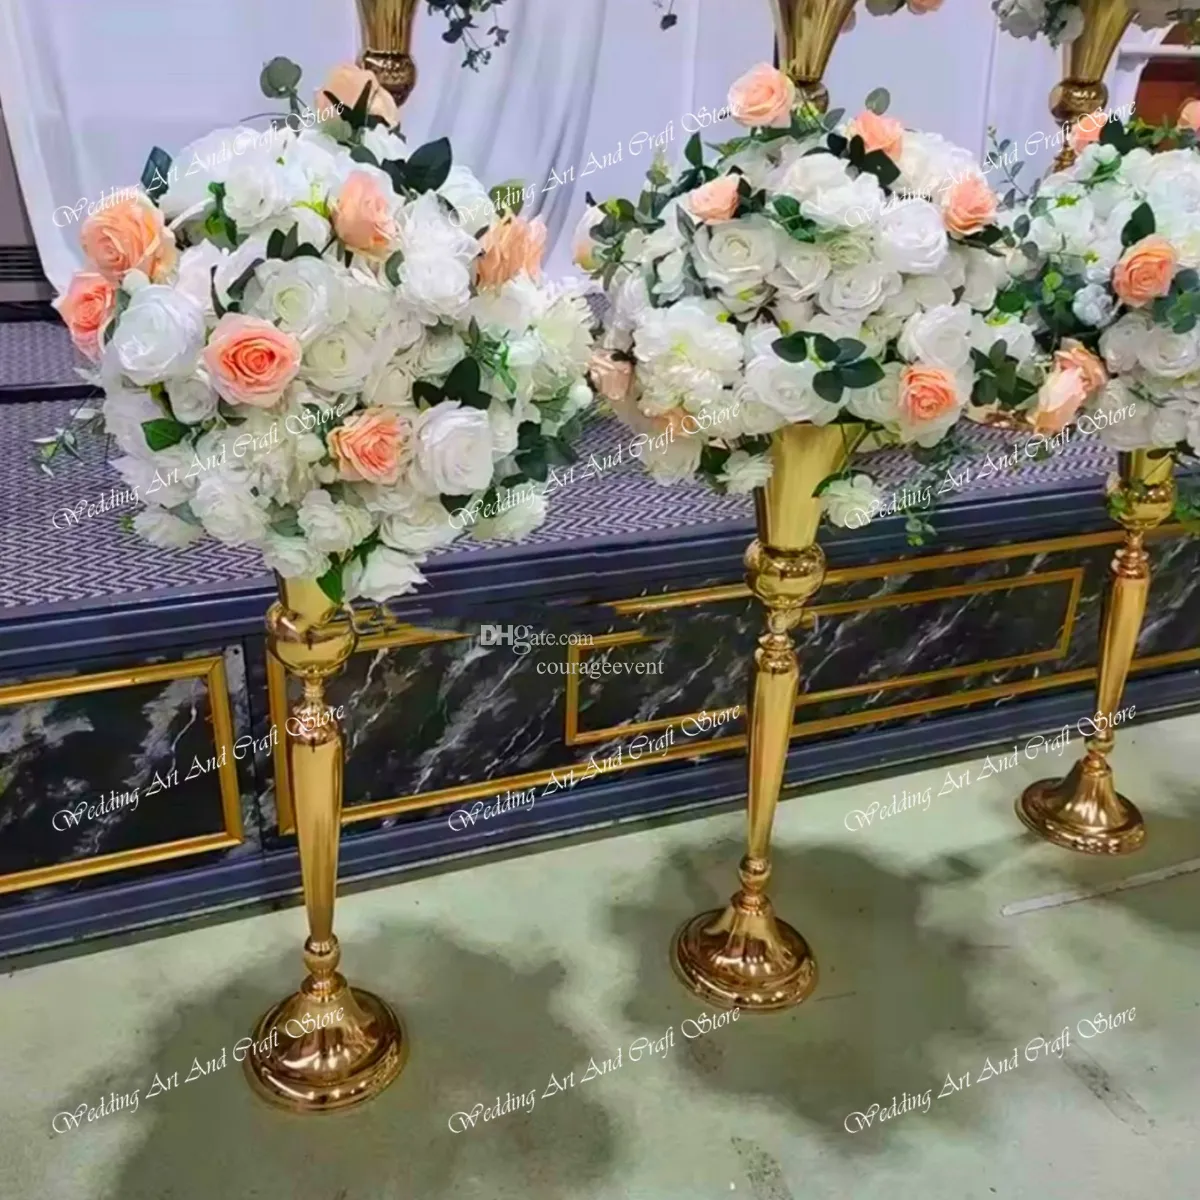 60 cm à 120 cm de haut) décoration de pièce maîtresse florale personnalisée de mariage centres de table de boules de fleurs de roses artificielles pour les décorations d'arrangement de toile de fond de mariage 378